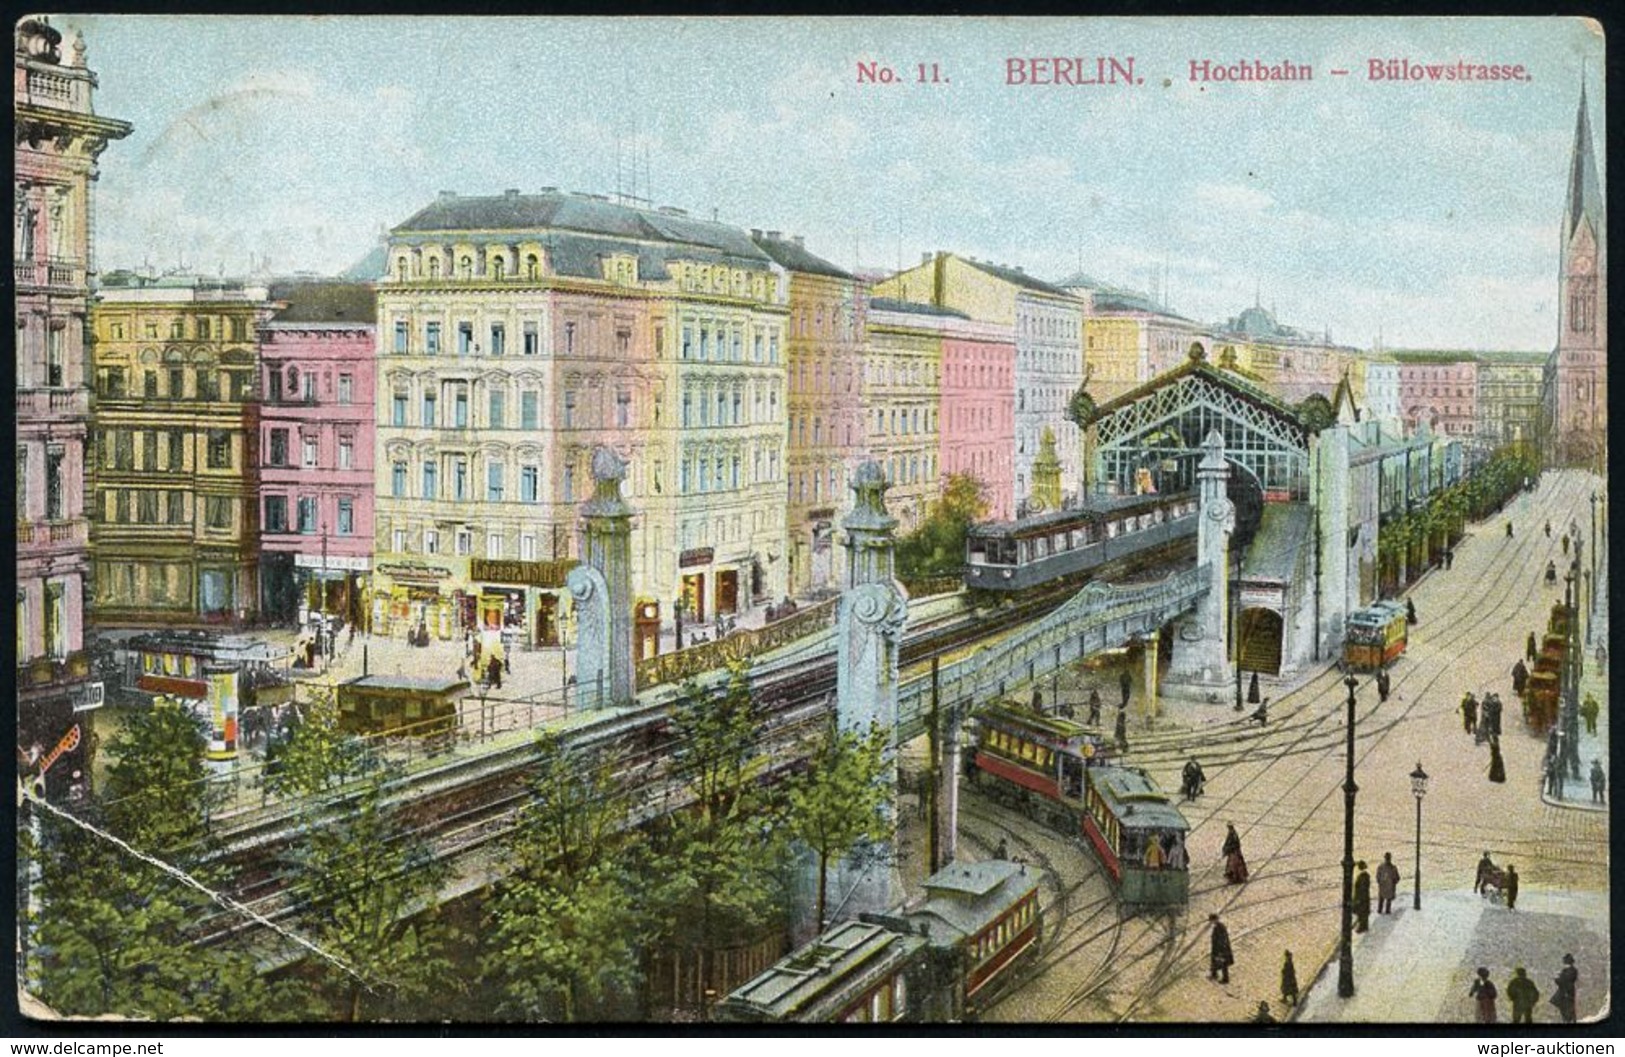 UNTERGRUNDBAHN /U-BAHN : Berlin-Schöneberg 1909/24 U-Bahnhof Bülowstraße, 6 Verschiedene Color-Foto-Ak., , Teils Gebr.,  - Trains